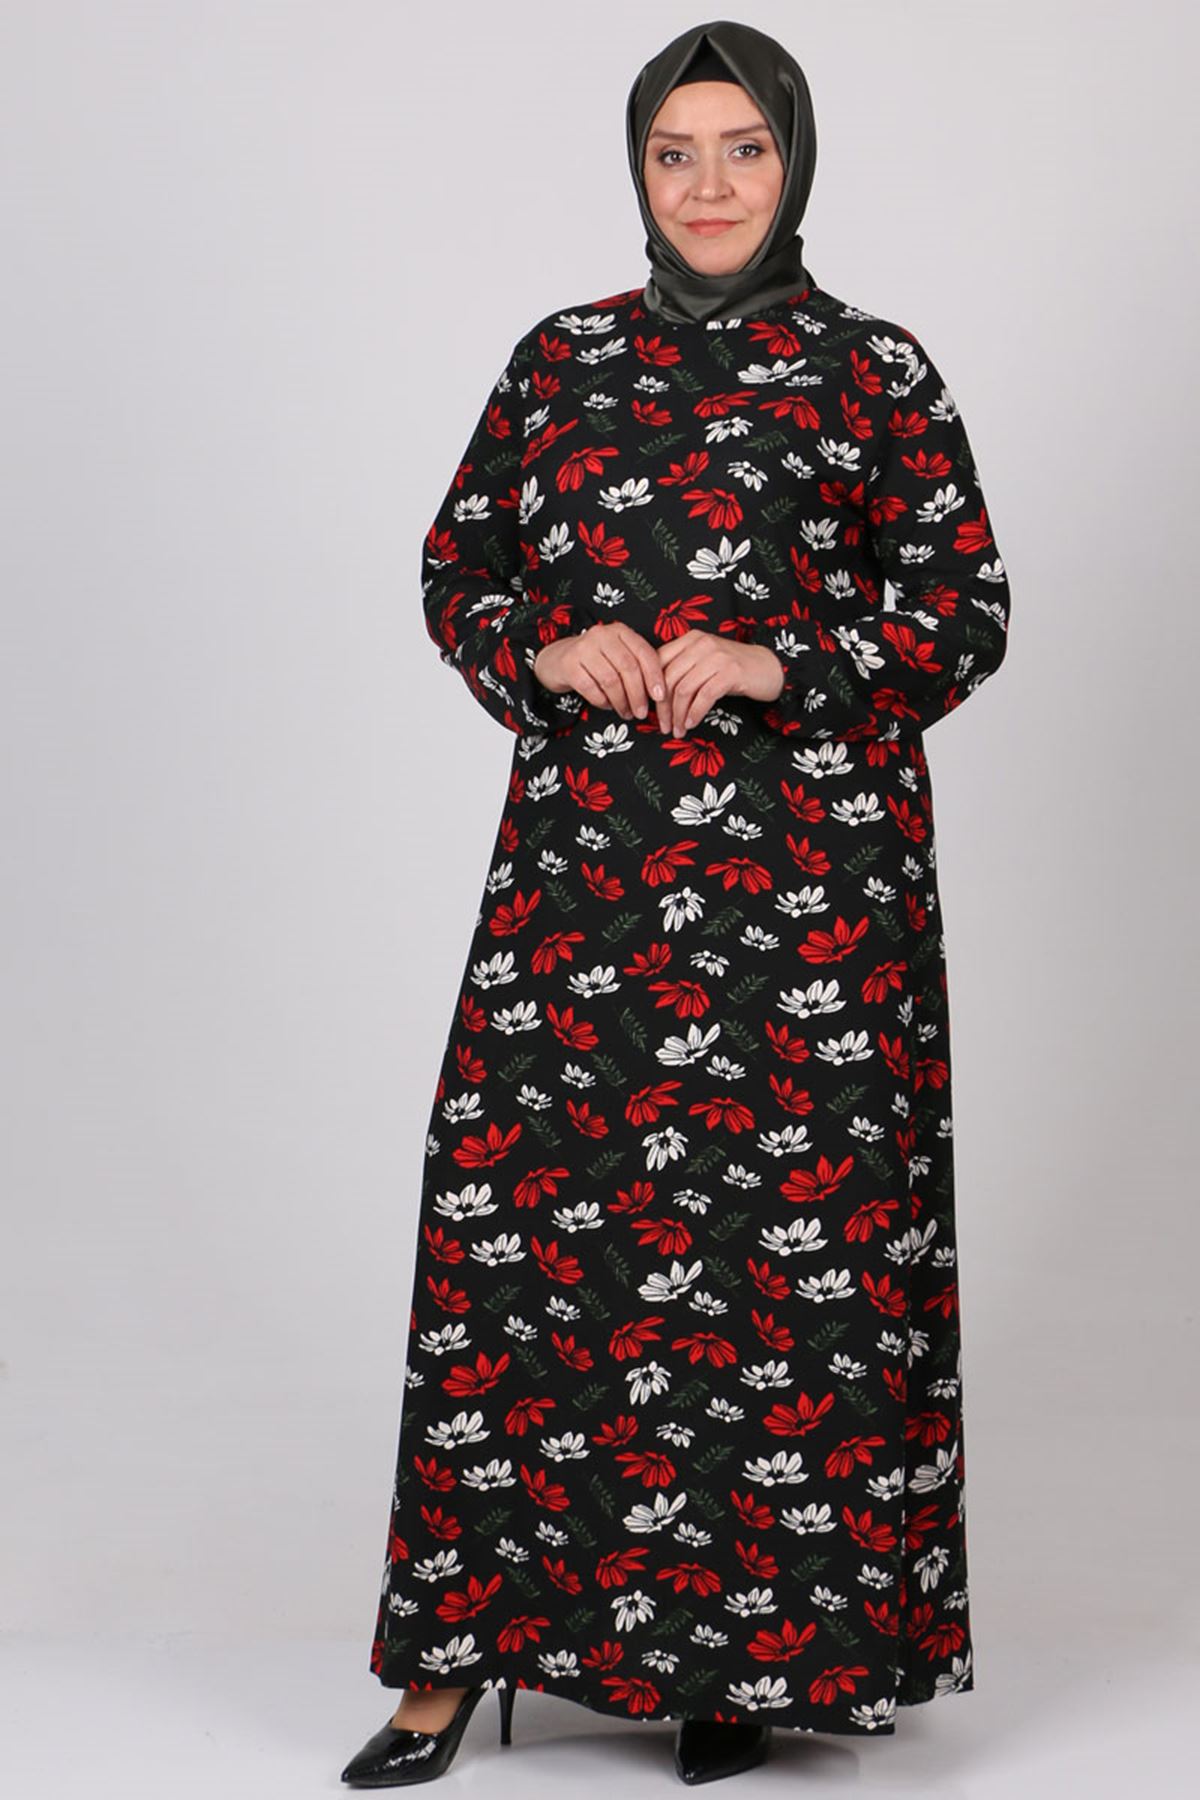 22023 Büyük Beden Kolu Lastikli Örme Krep Elbise - Kırmızı Çiçekli